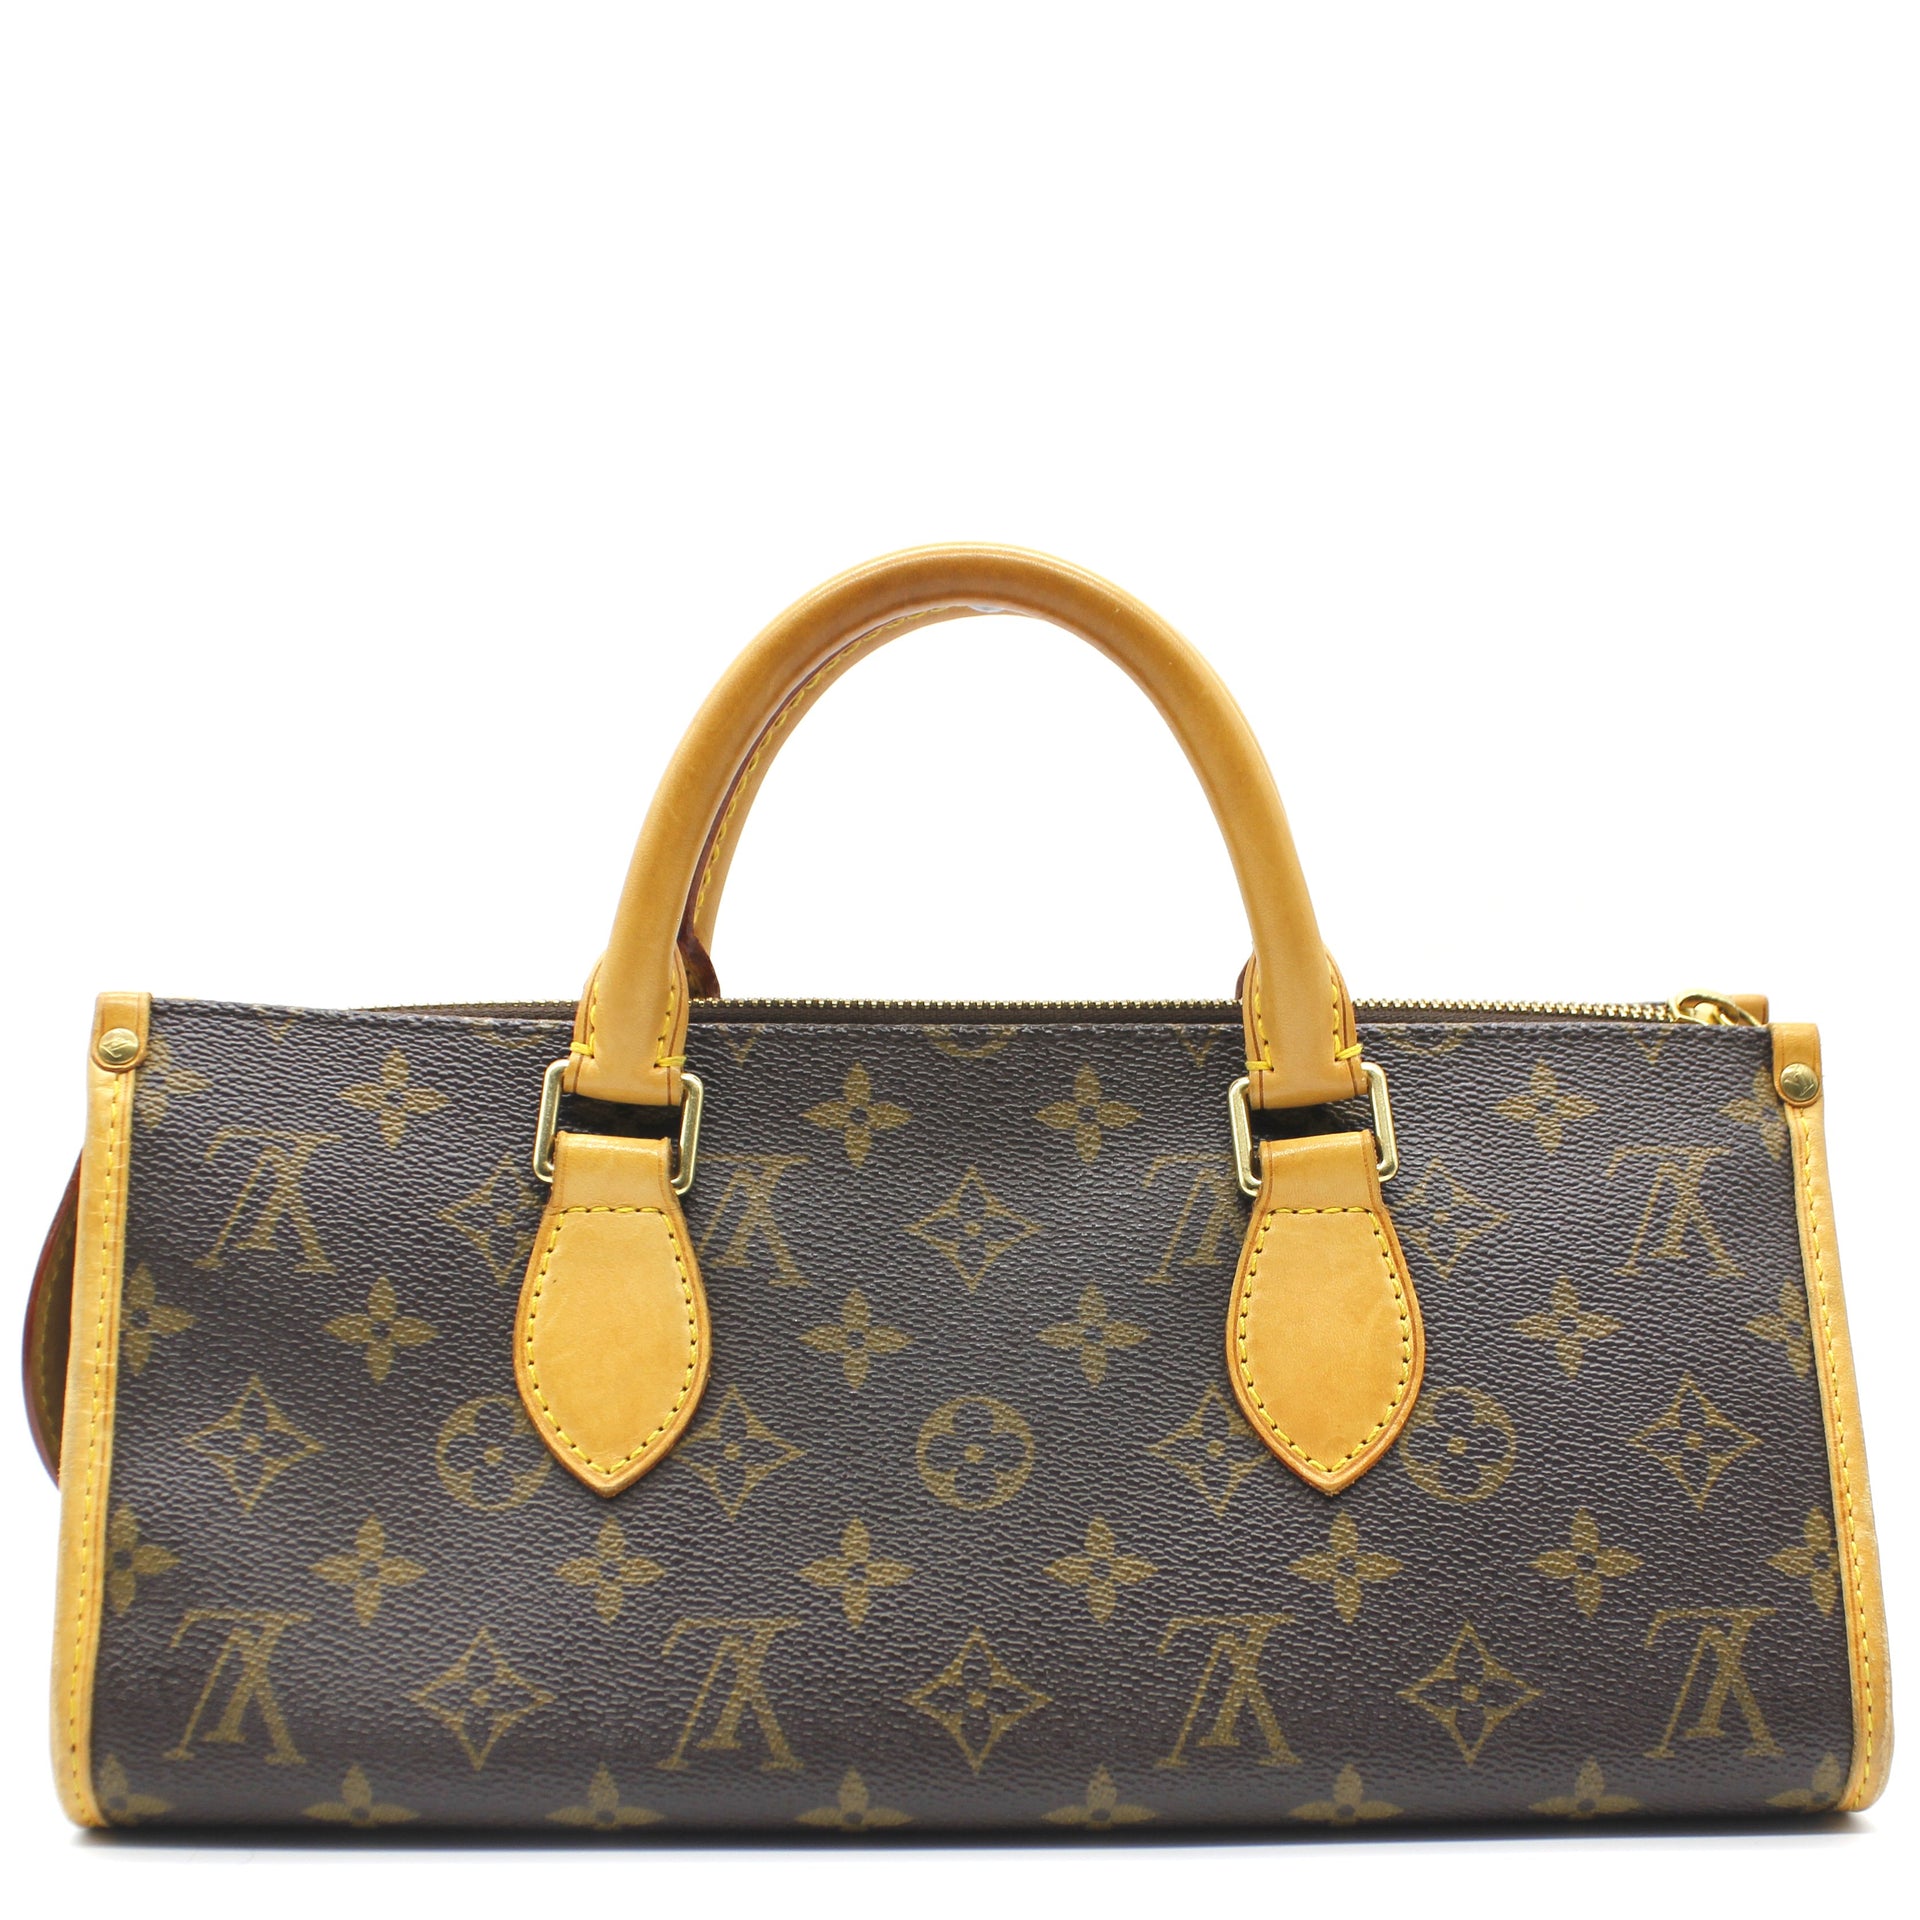 Shop for Louis Vuitton Monogram Canvas Leather Popincourt Bag